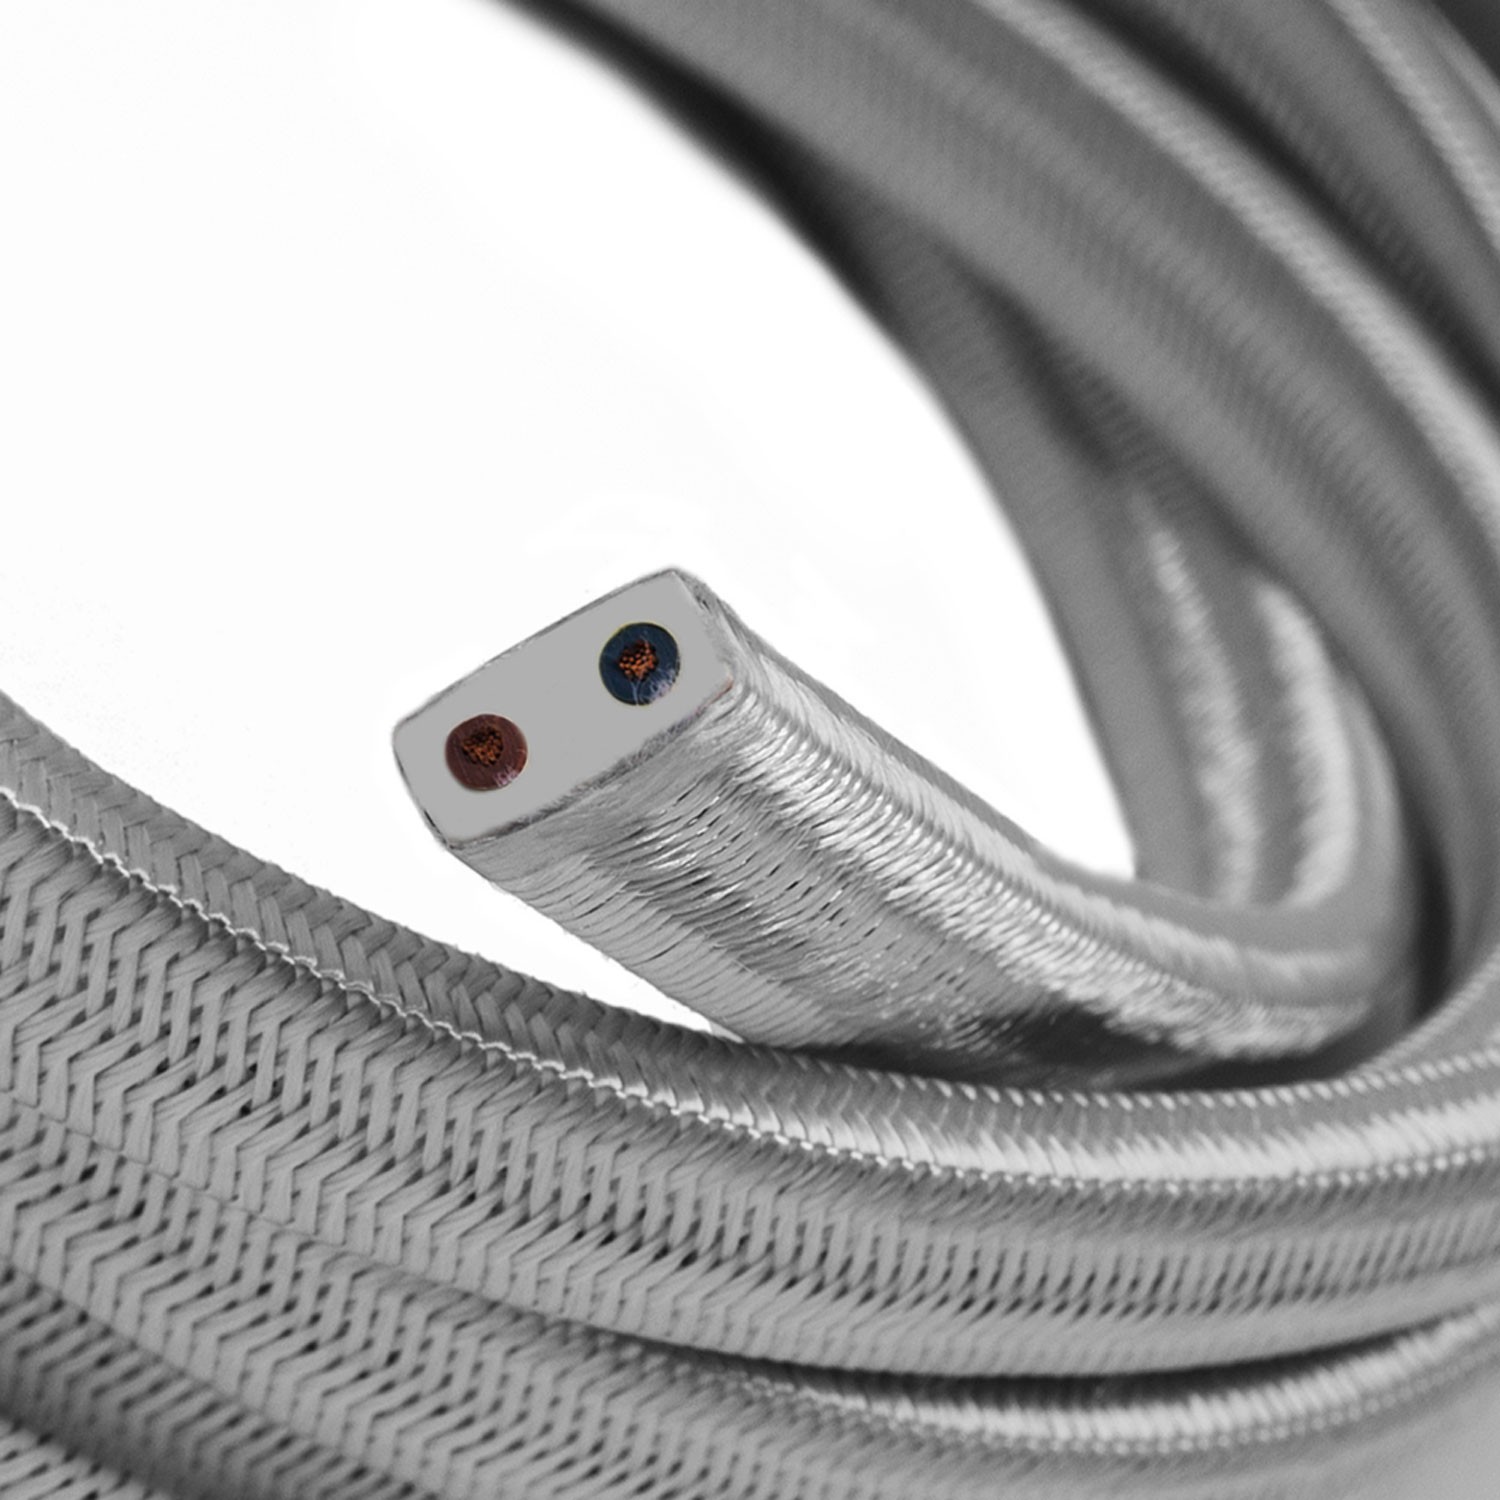 Električni kabel za verigo luči v srebrni barvi CM02